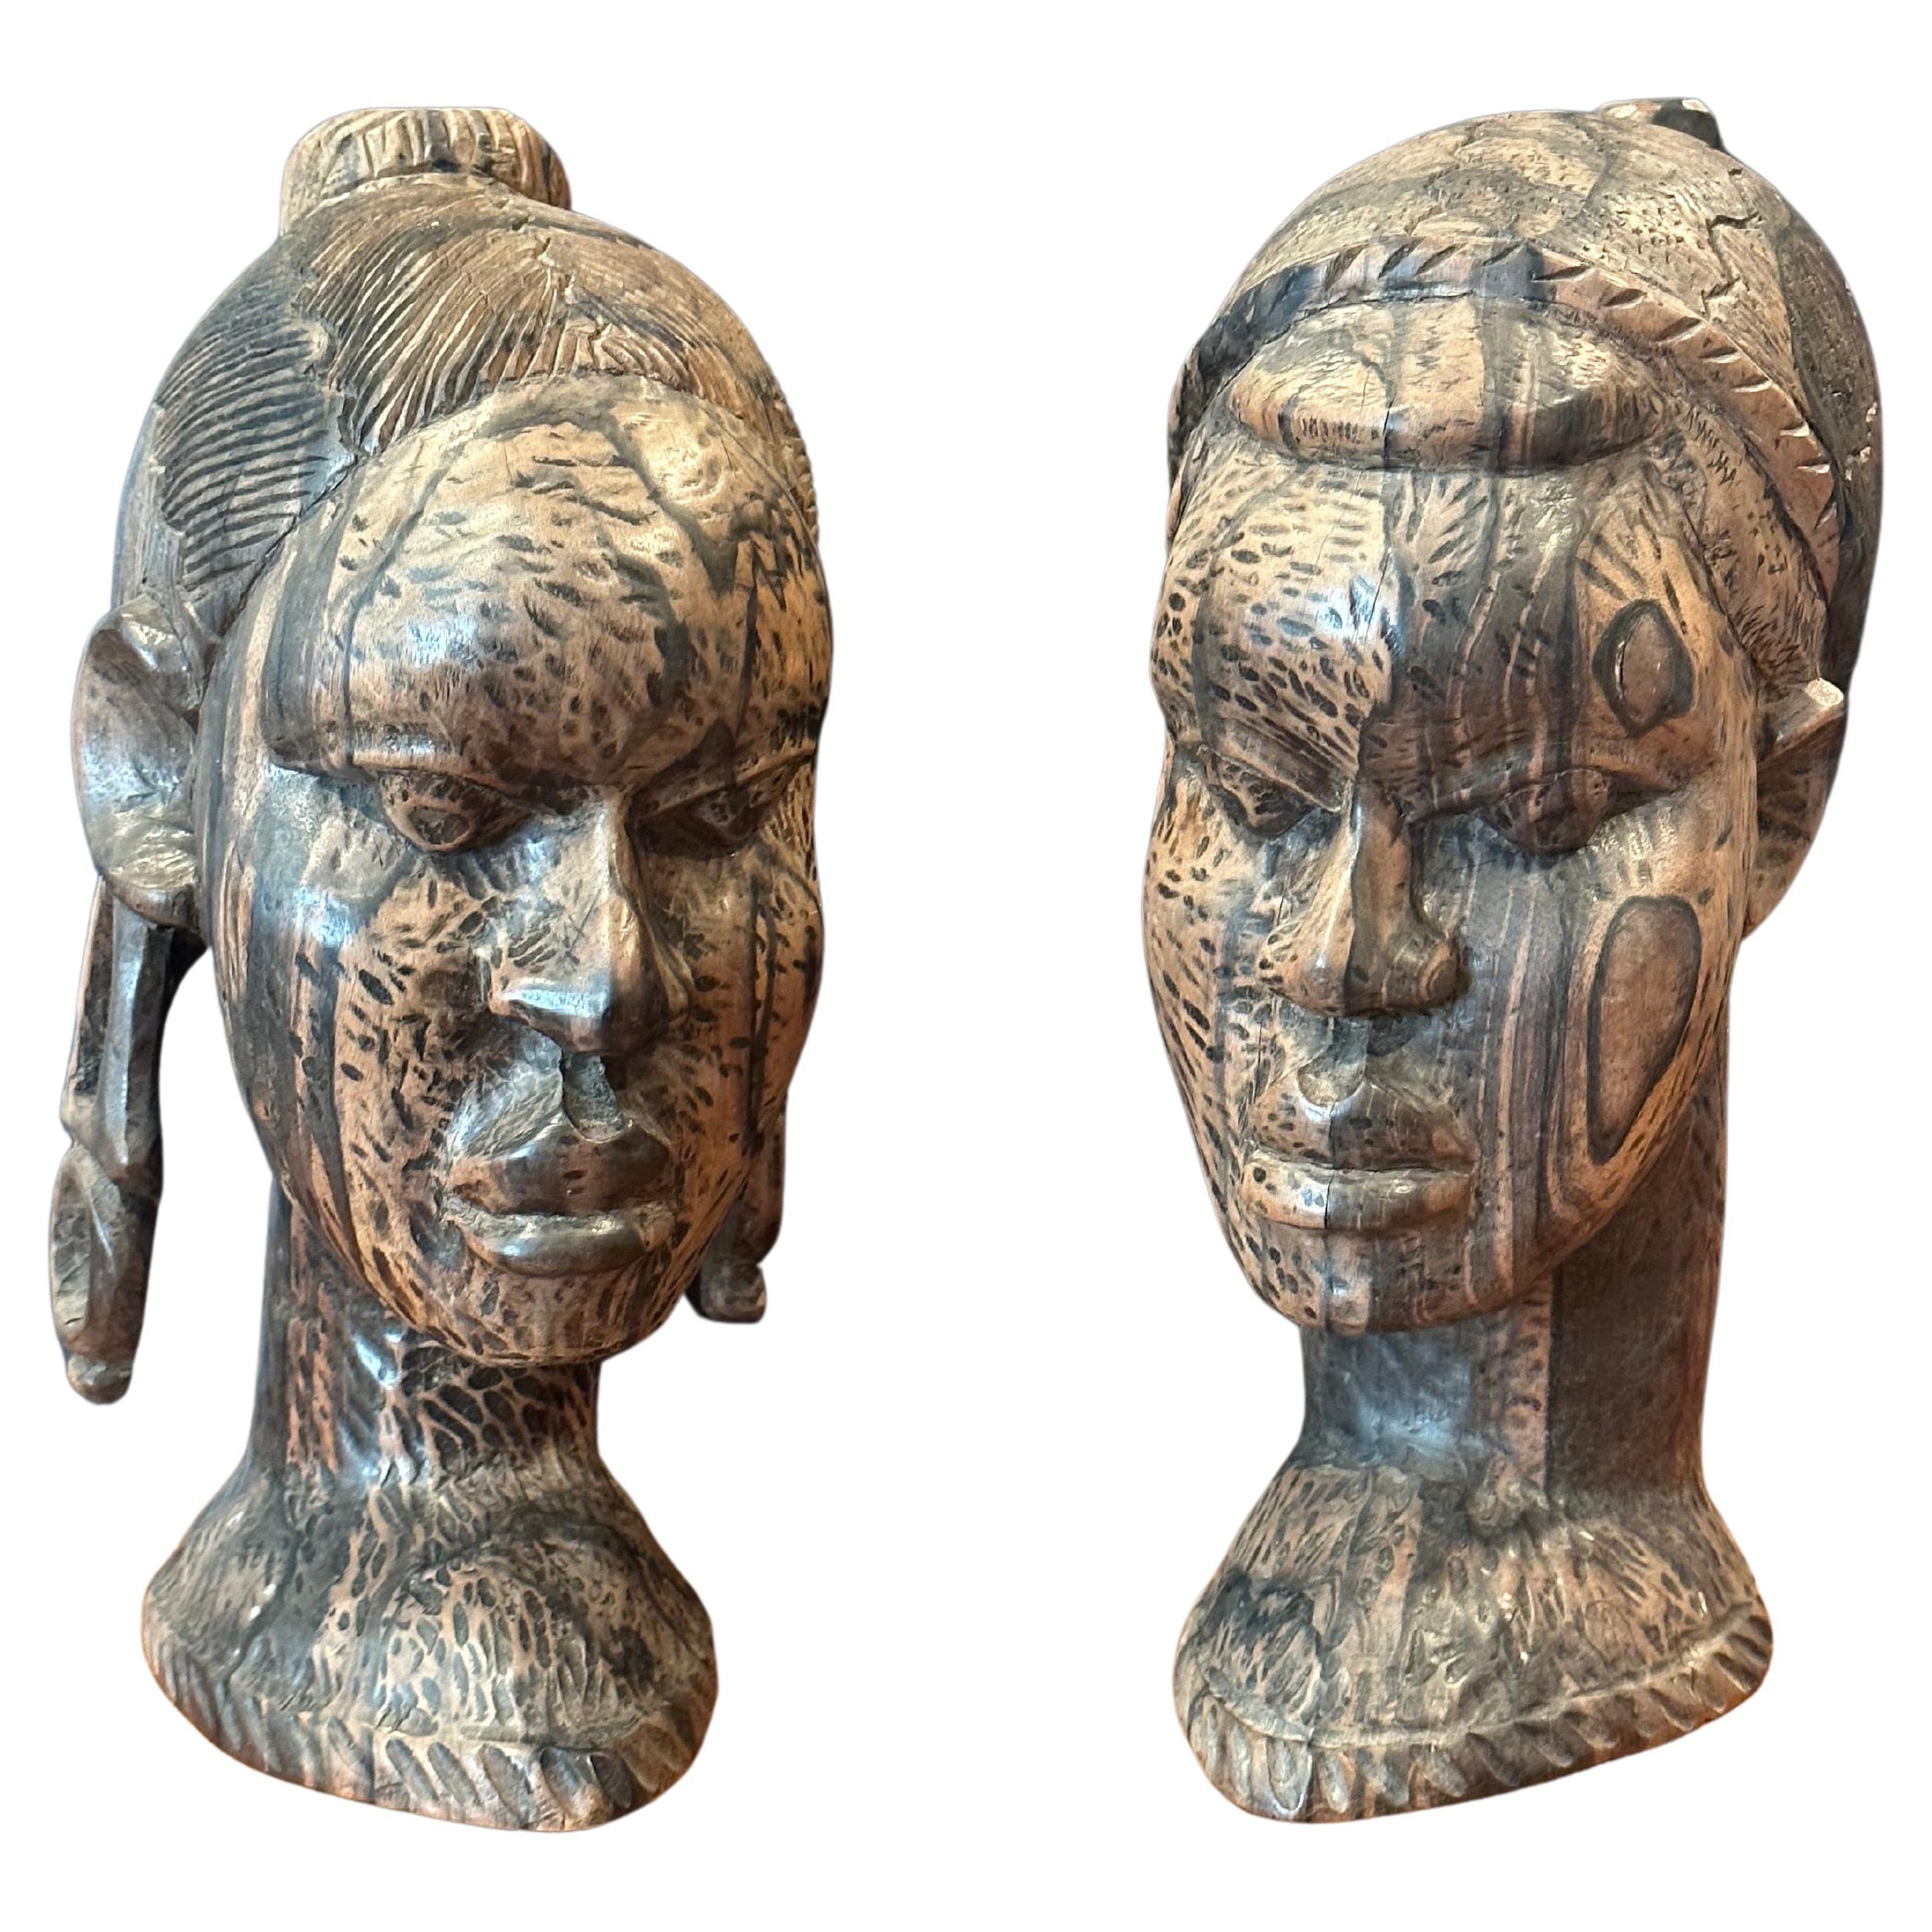 Ein beeindruckendes Paar handgeschnitzter afrikanischer Büsten aus Hartholz, ca. 1970er Jahre. Die beiden sind aus einer Art exotischem Hartholz (Zebrano? sehr schwer und dicht) gefertigt und haben ein tolles Aussehen.  Jede Büste ist in sehr gutem